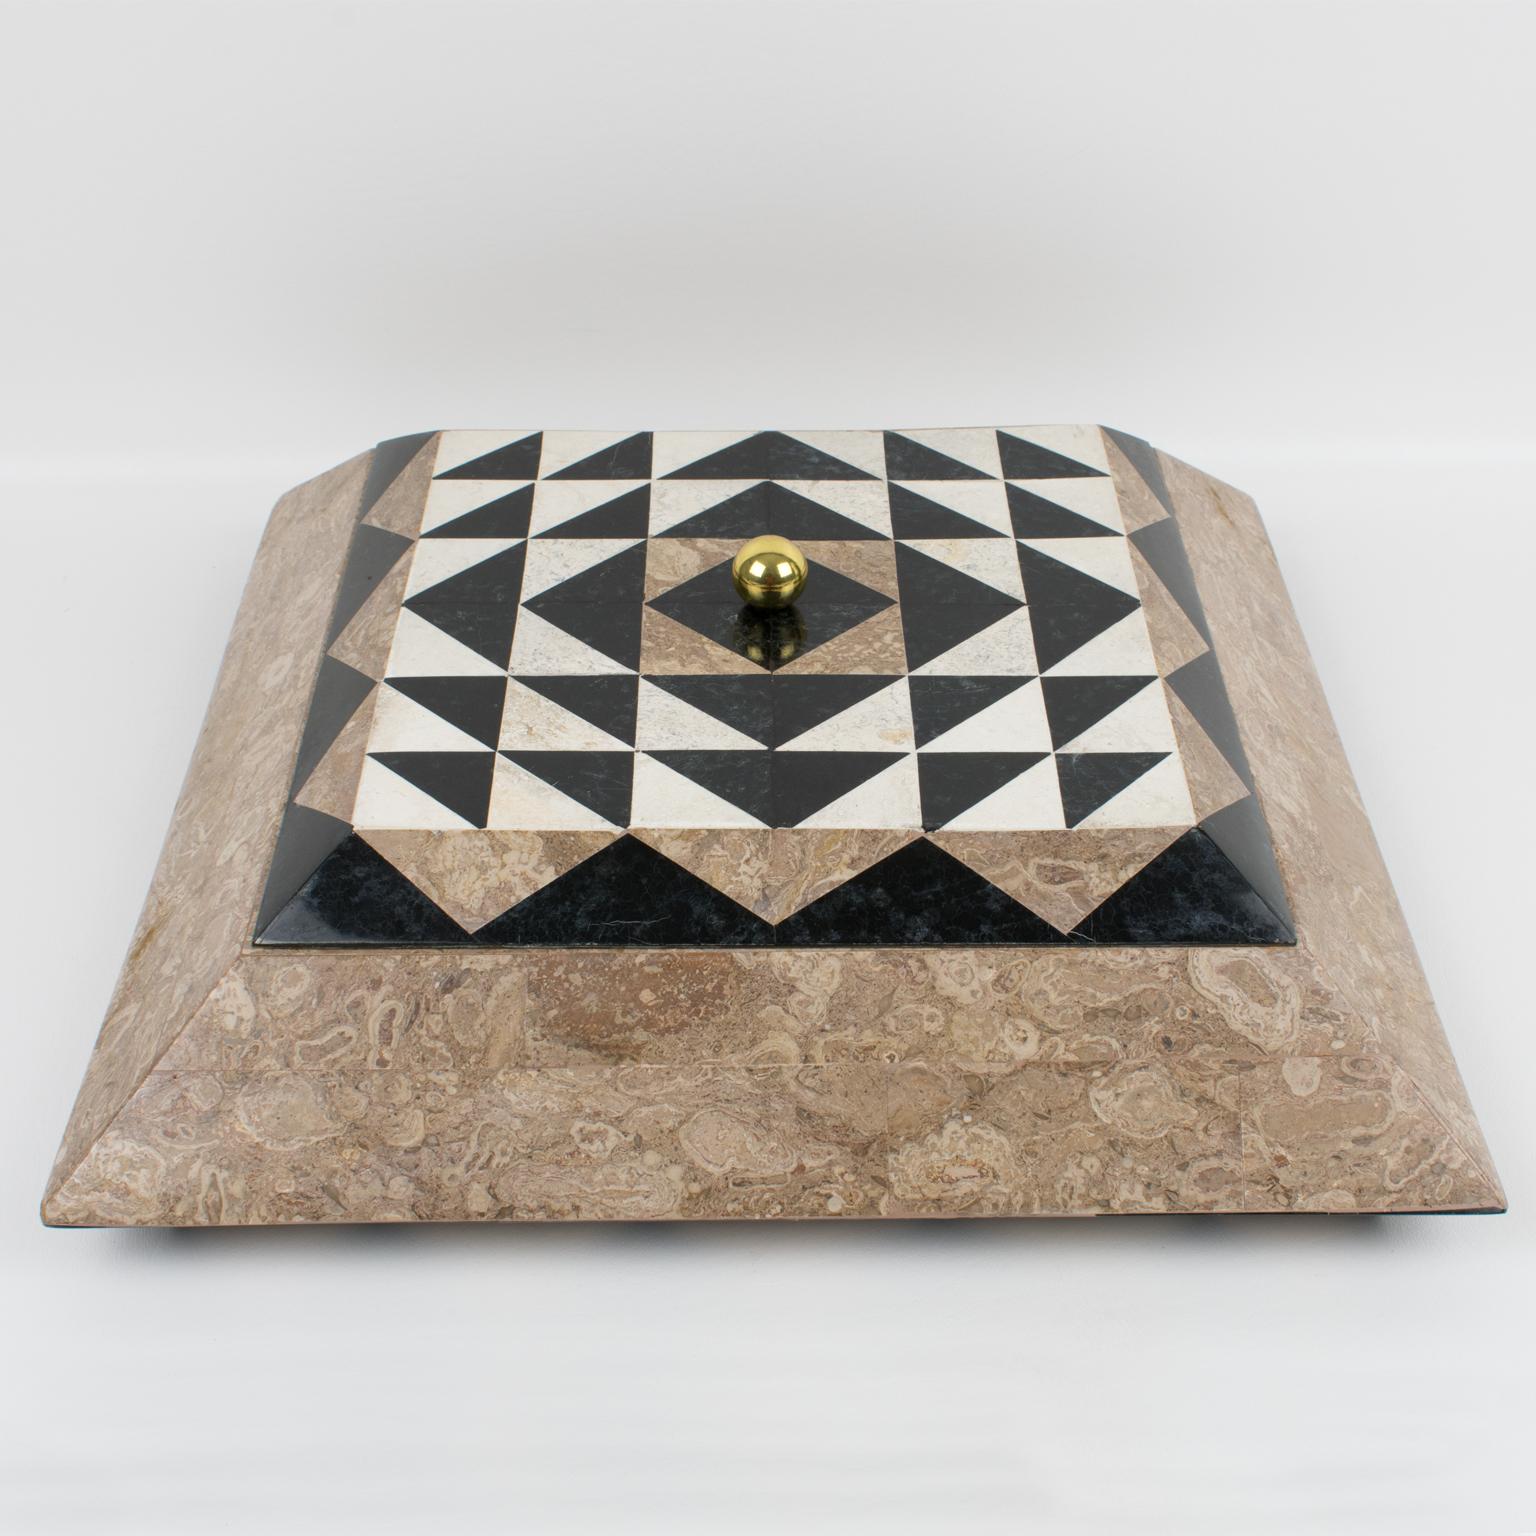 Eine spektakuläre Schachtel mit Deckel, die von Maitland-Smith in den 1980er Jahren entworfen wurde und aus mosaikartigem Marmor, Stein, Travertin und Messing besteht. Das pyramidenförmige, quadratische Design ist in den Farben Sandbeige, Schwarz